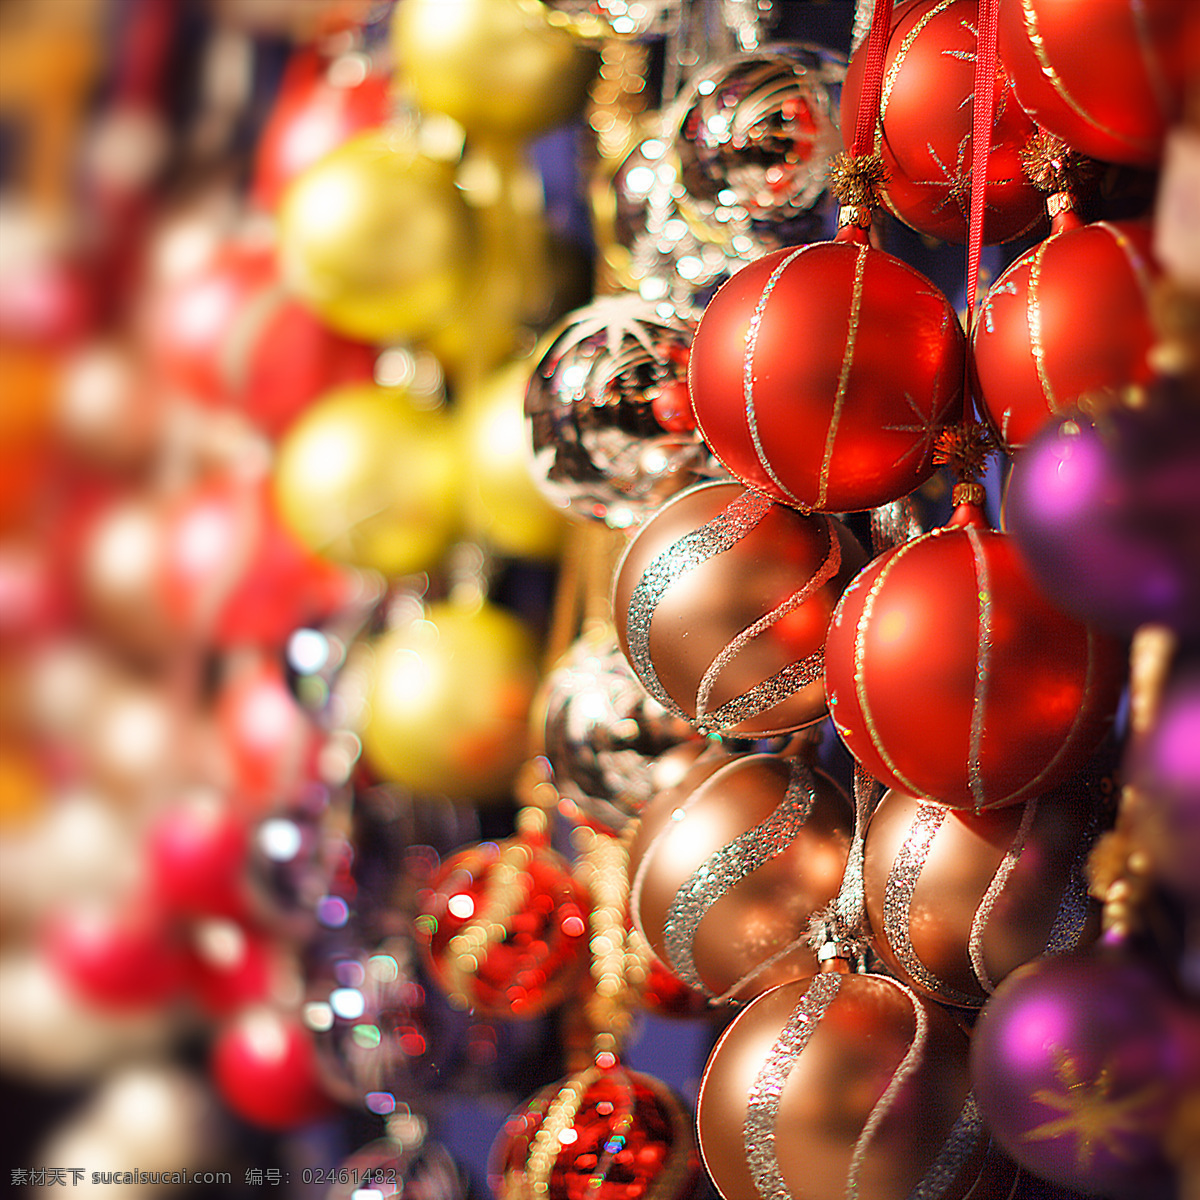 圣诞节 球体 挂件 节日 红色球体 圣诞节挂件 圣诞节饰品 其他类别 生活百科